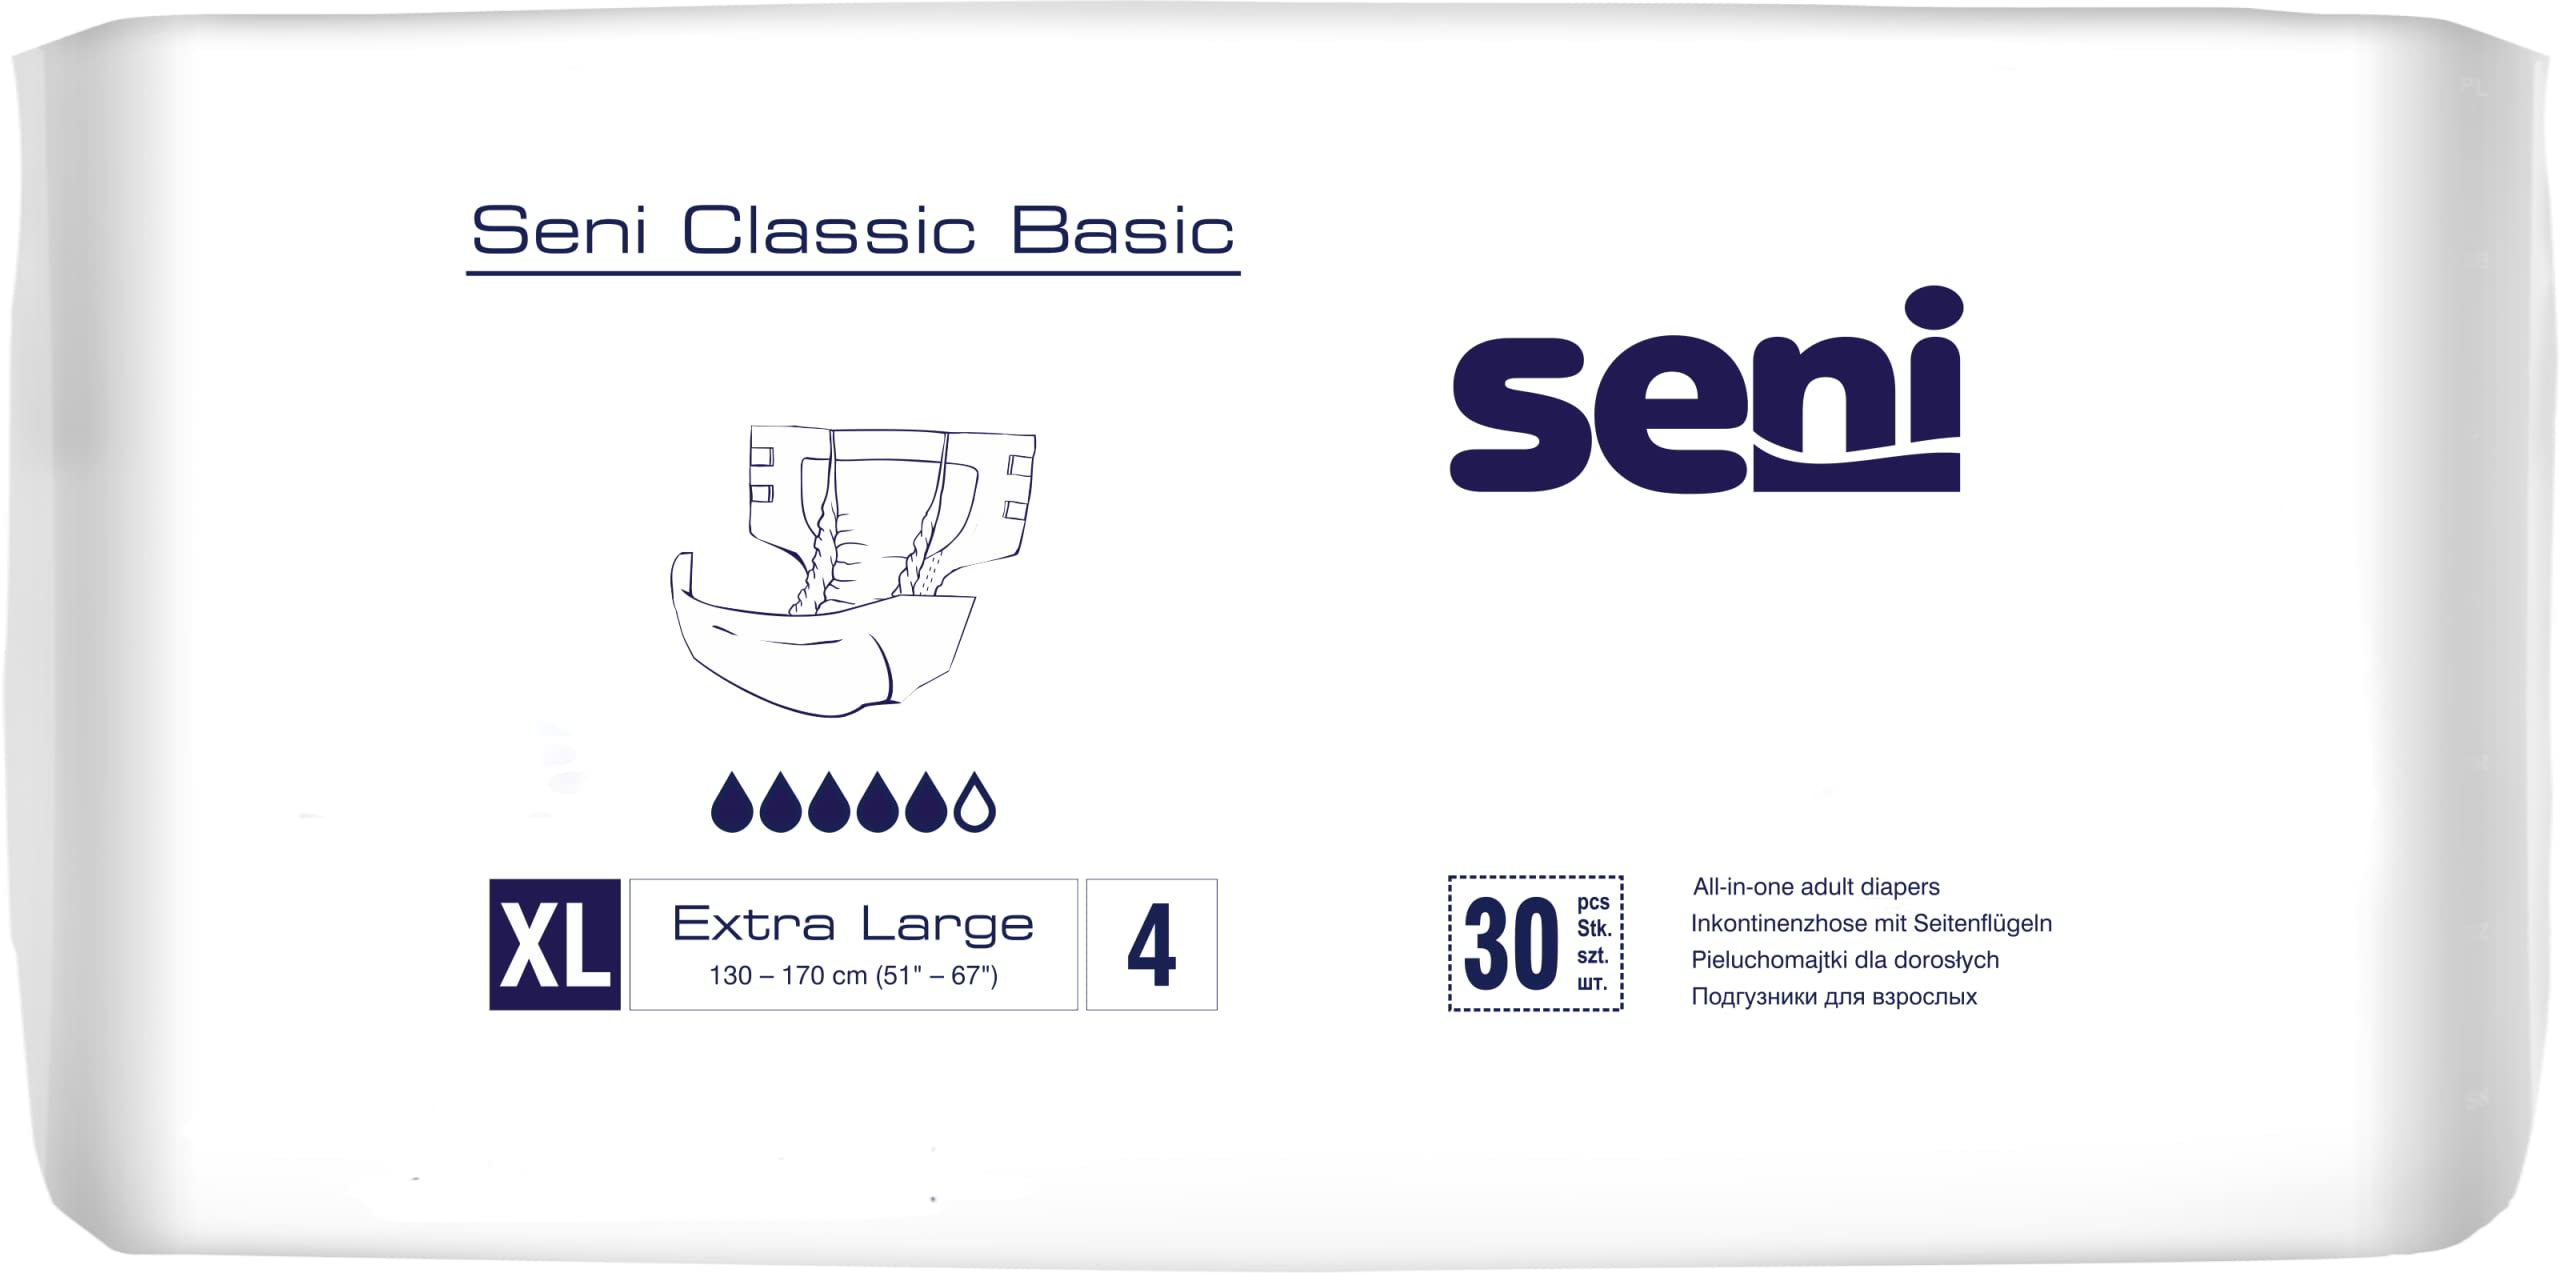 Scutece si cearsafuri - Seni Classic Basic Extra Large A30, farmacieieftina.ro